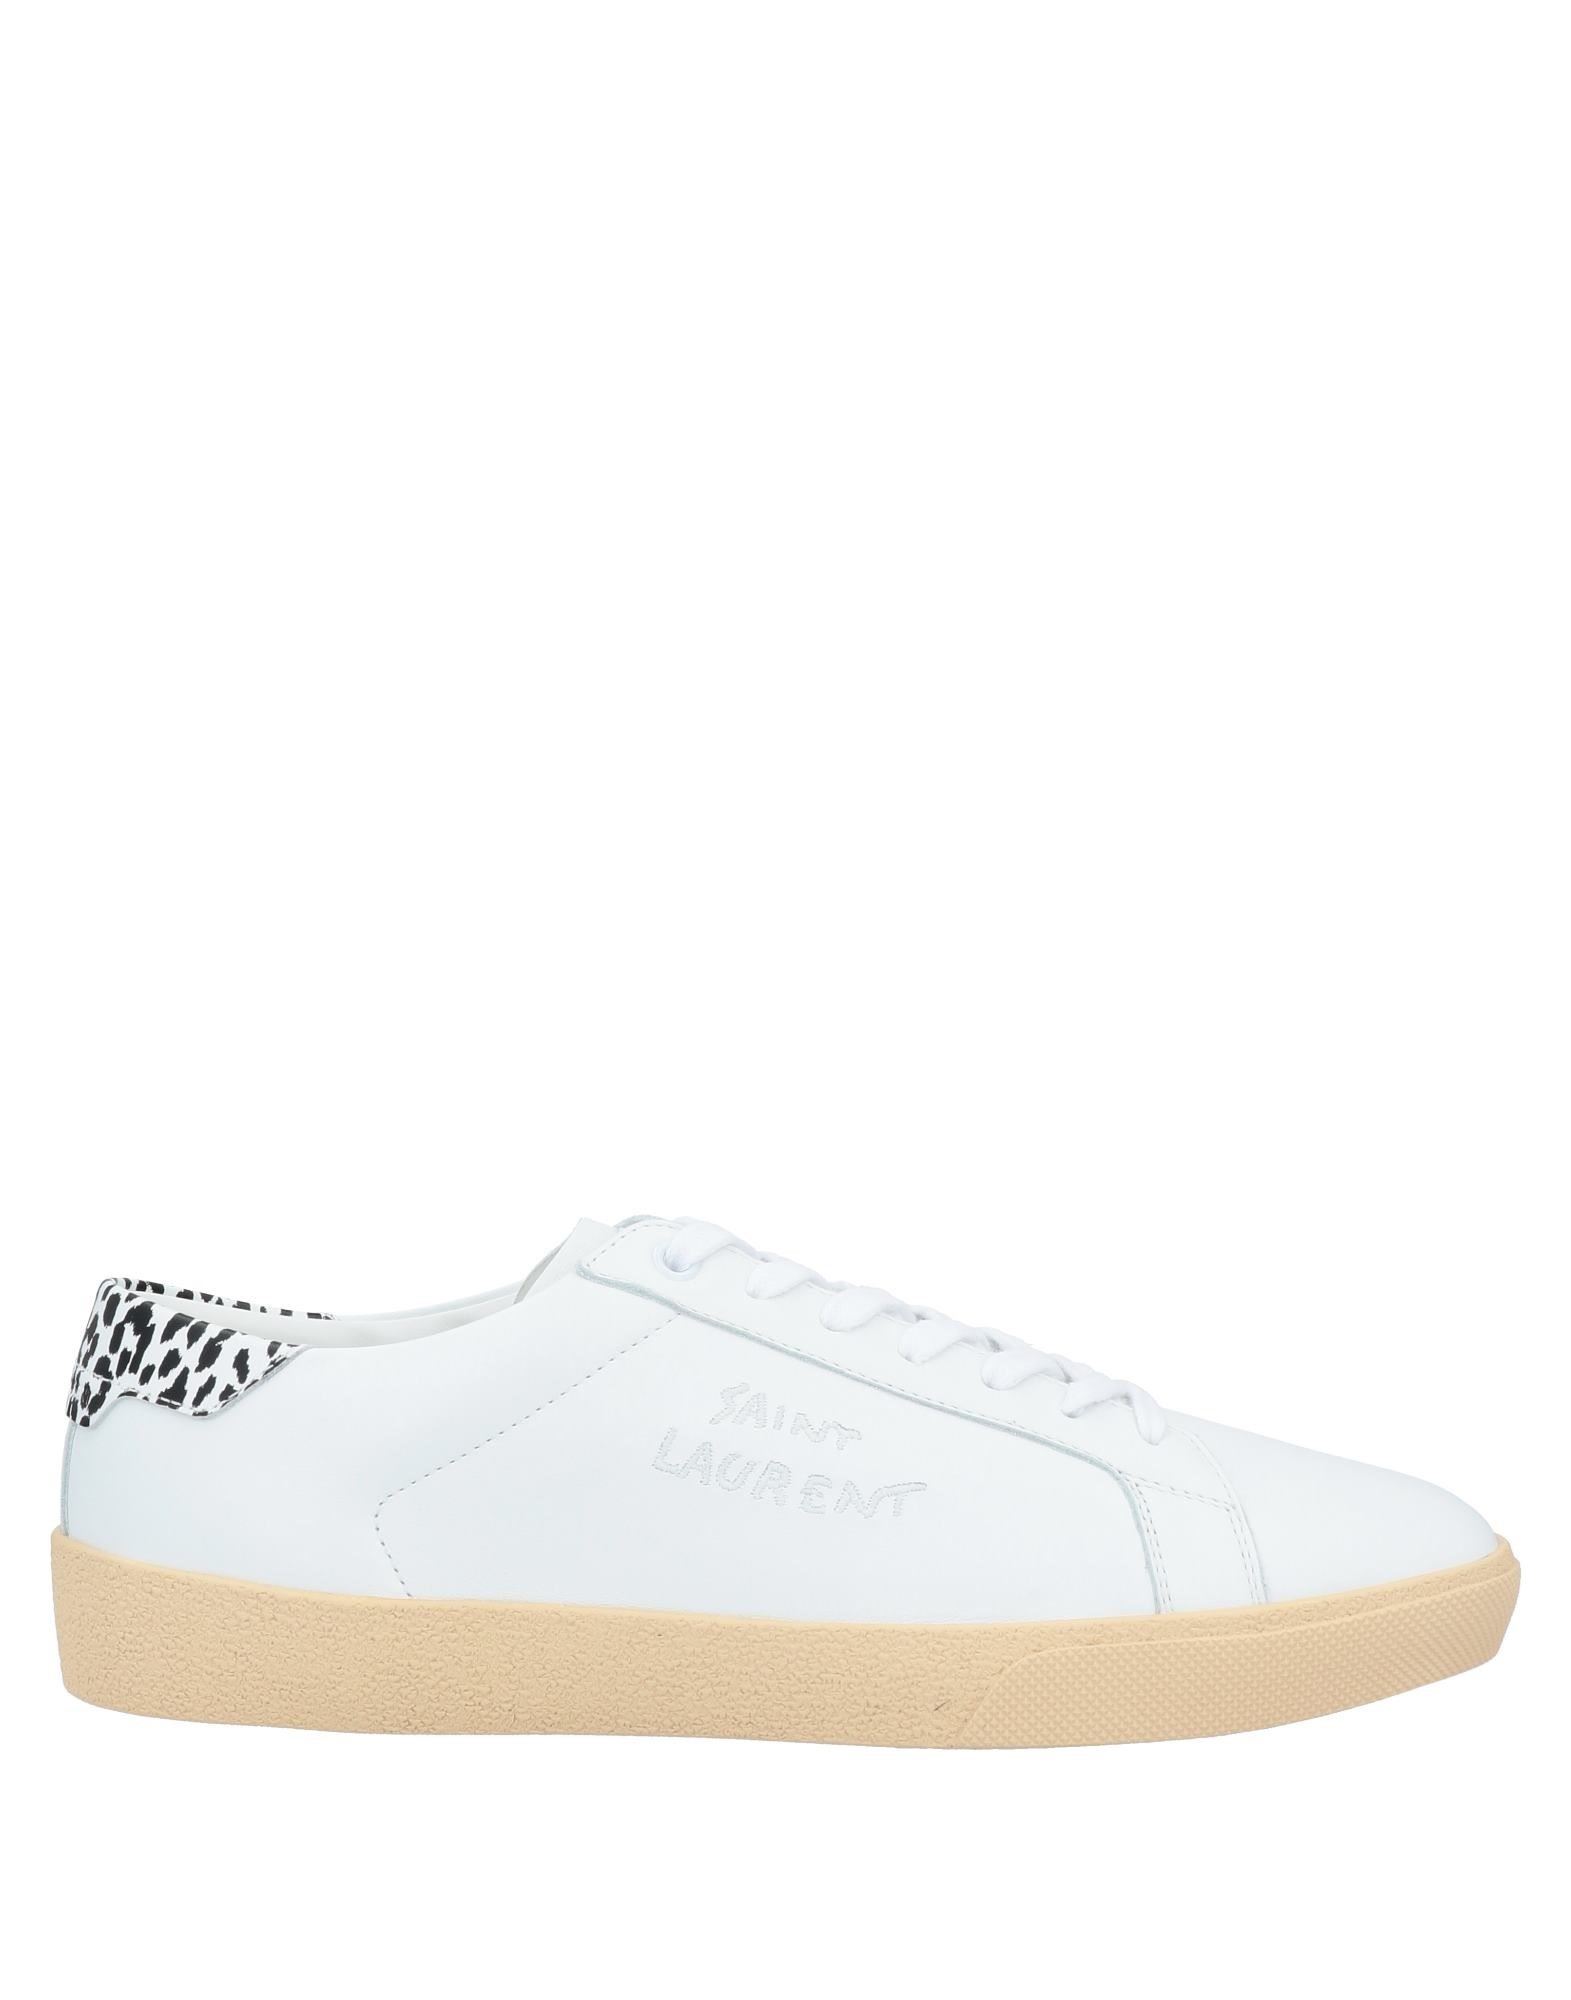 Shop Saint Laurent Man Sneakers White Size 9 Soft Leather